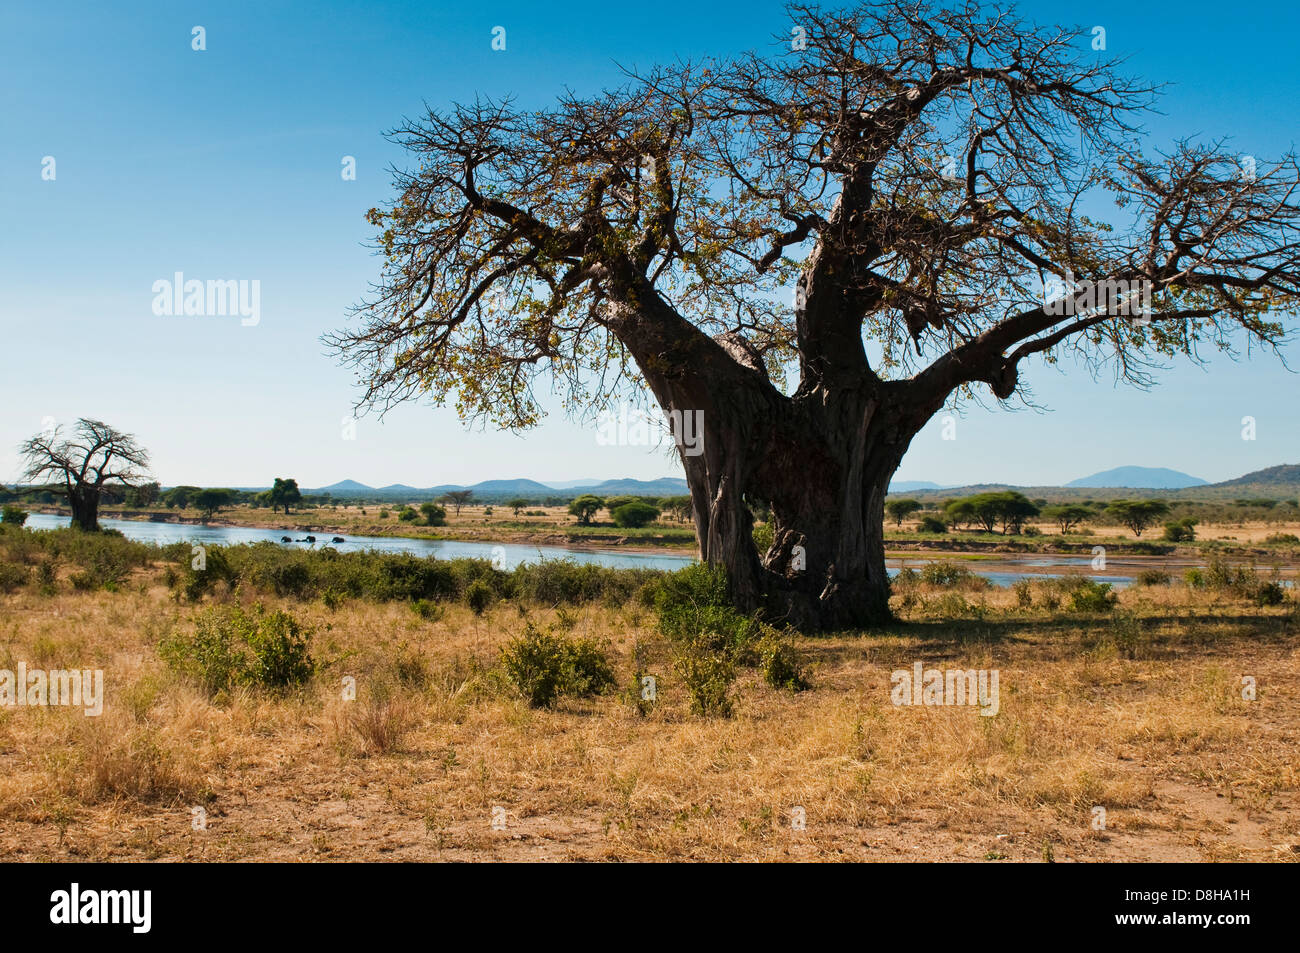 Baobab tree in Ruaha National Park, Iringa Region, Central Tanzania, Africa Stock Photo